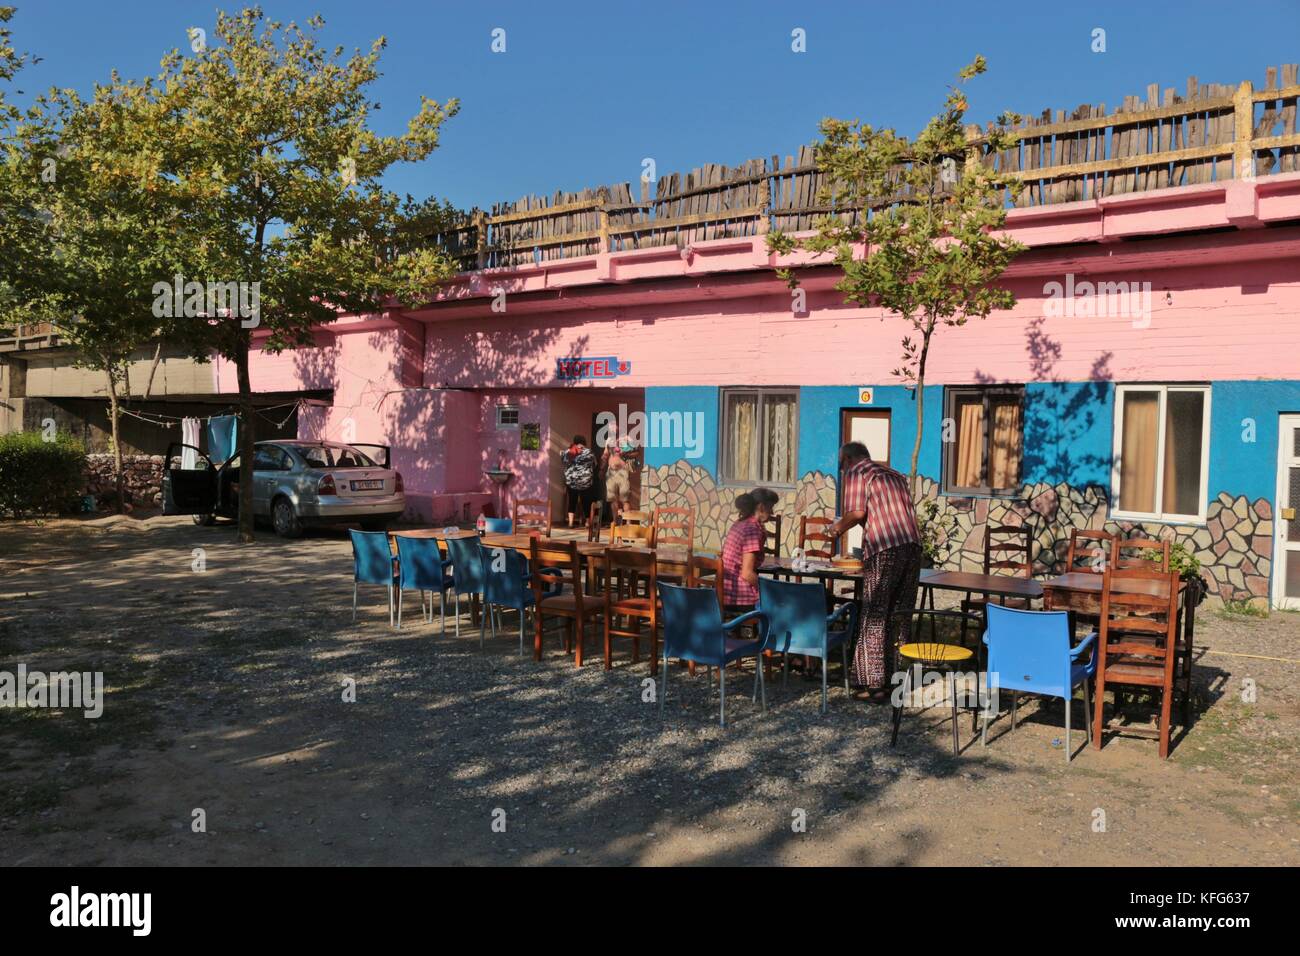 Ein Rosa Hotel buchstäblich unter der Brücke gebaut, neben einem Campingplatz Seite. in dem abgelegenen Dorf koman auf Fluss und See komani. Albanien, Europa. Stockfoto